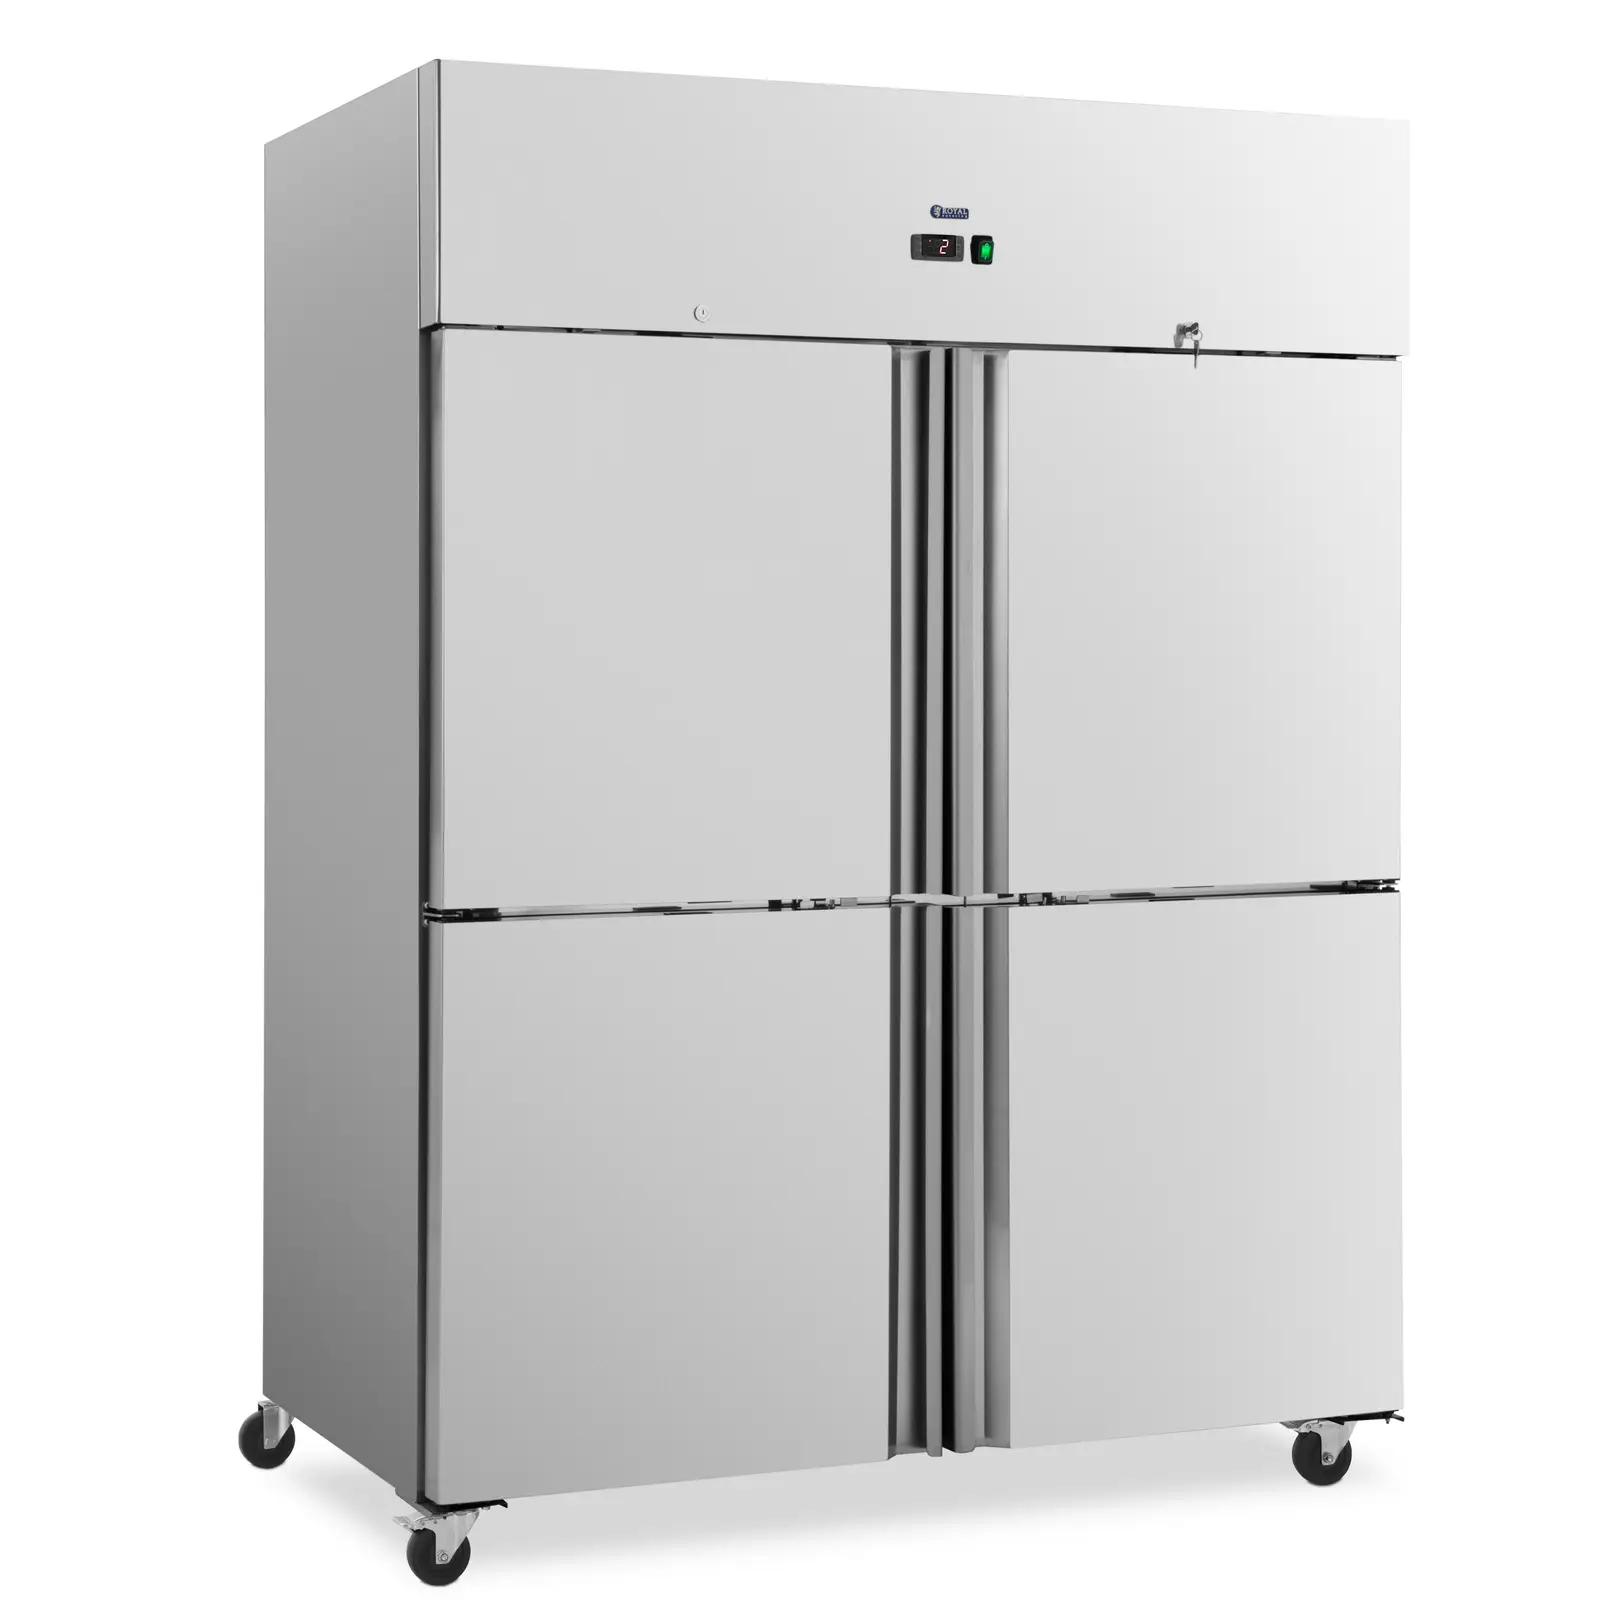 Poslovni hladnjak - 1001 l - inox - 4 vrata - 4 kotačića - na zaključavanje - Royal Catering